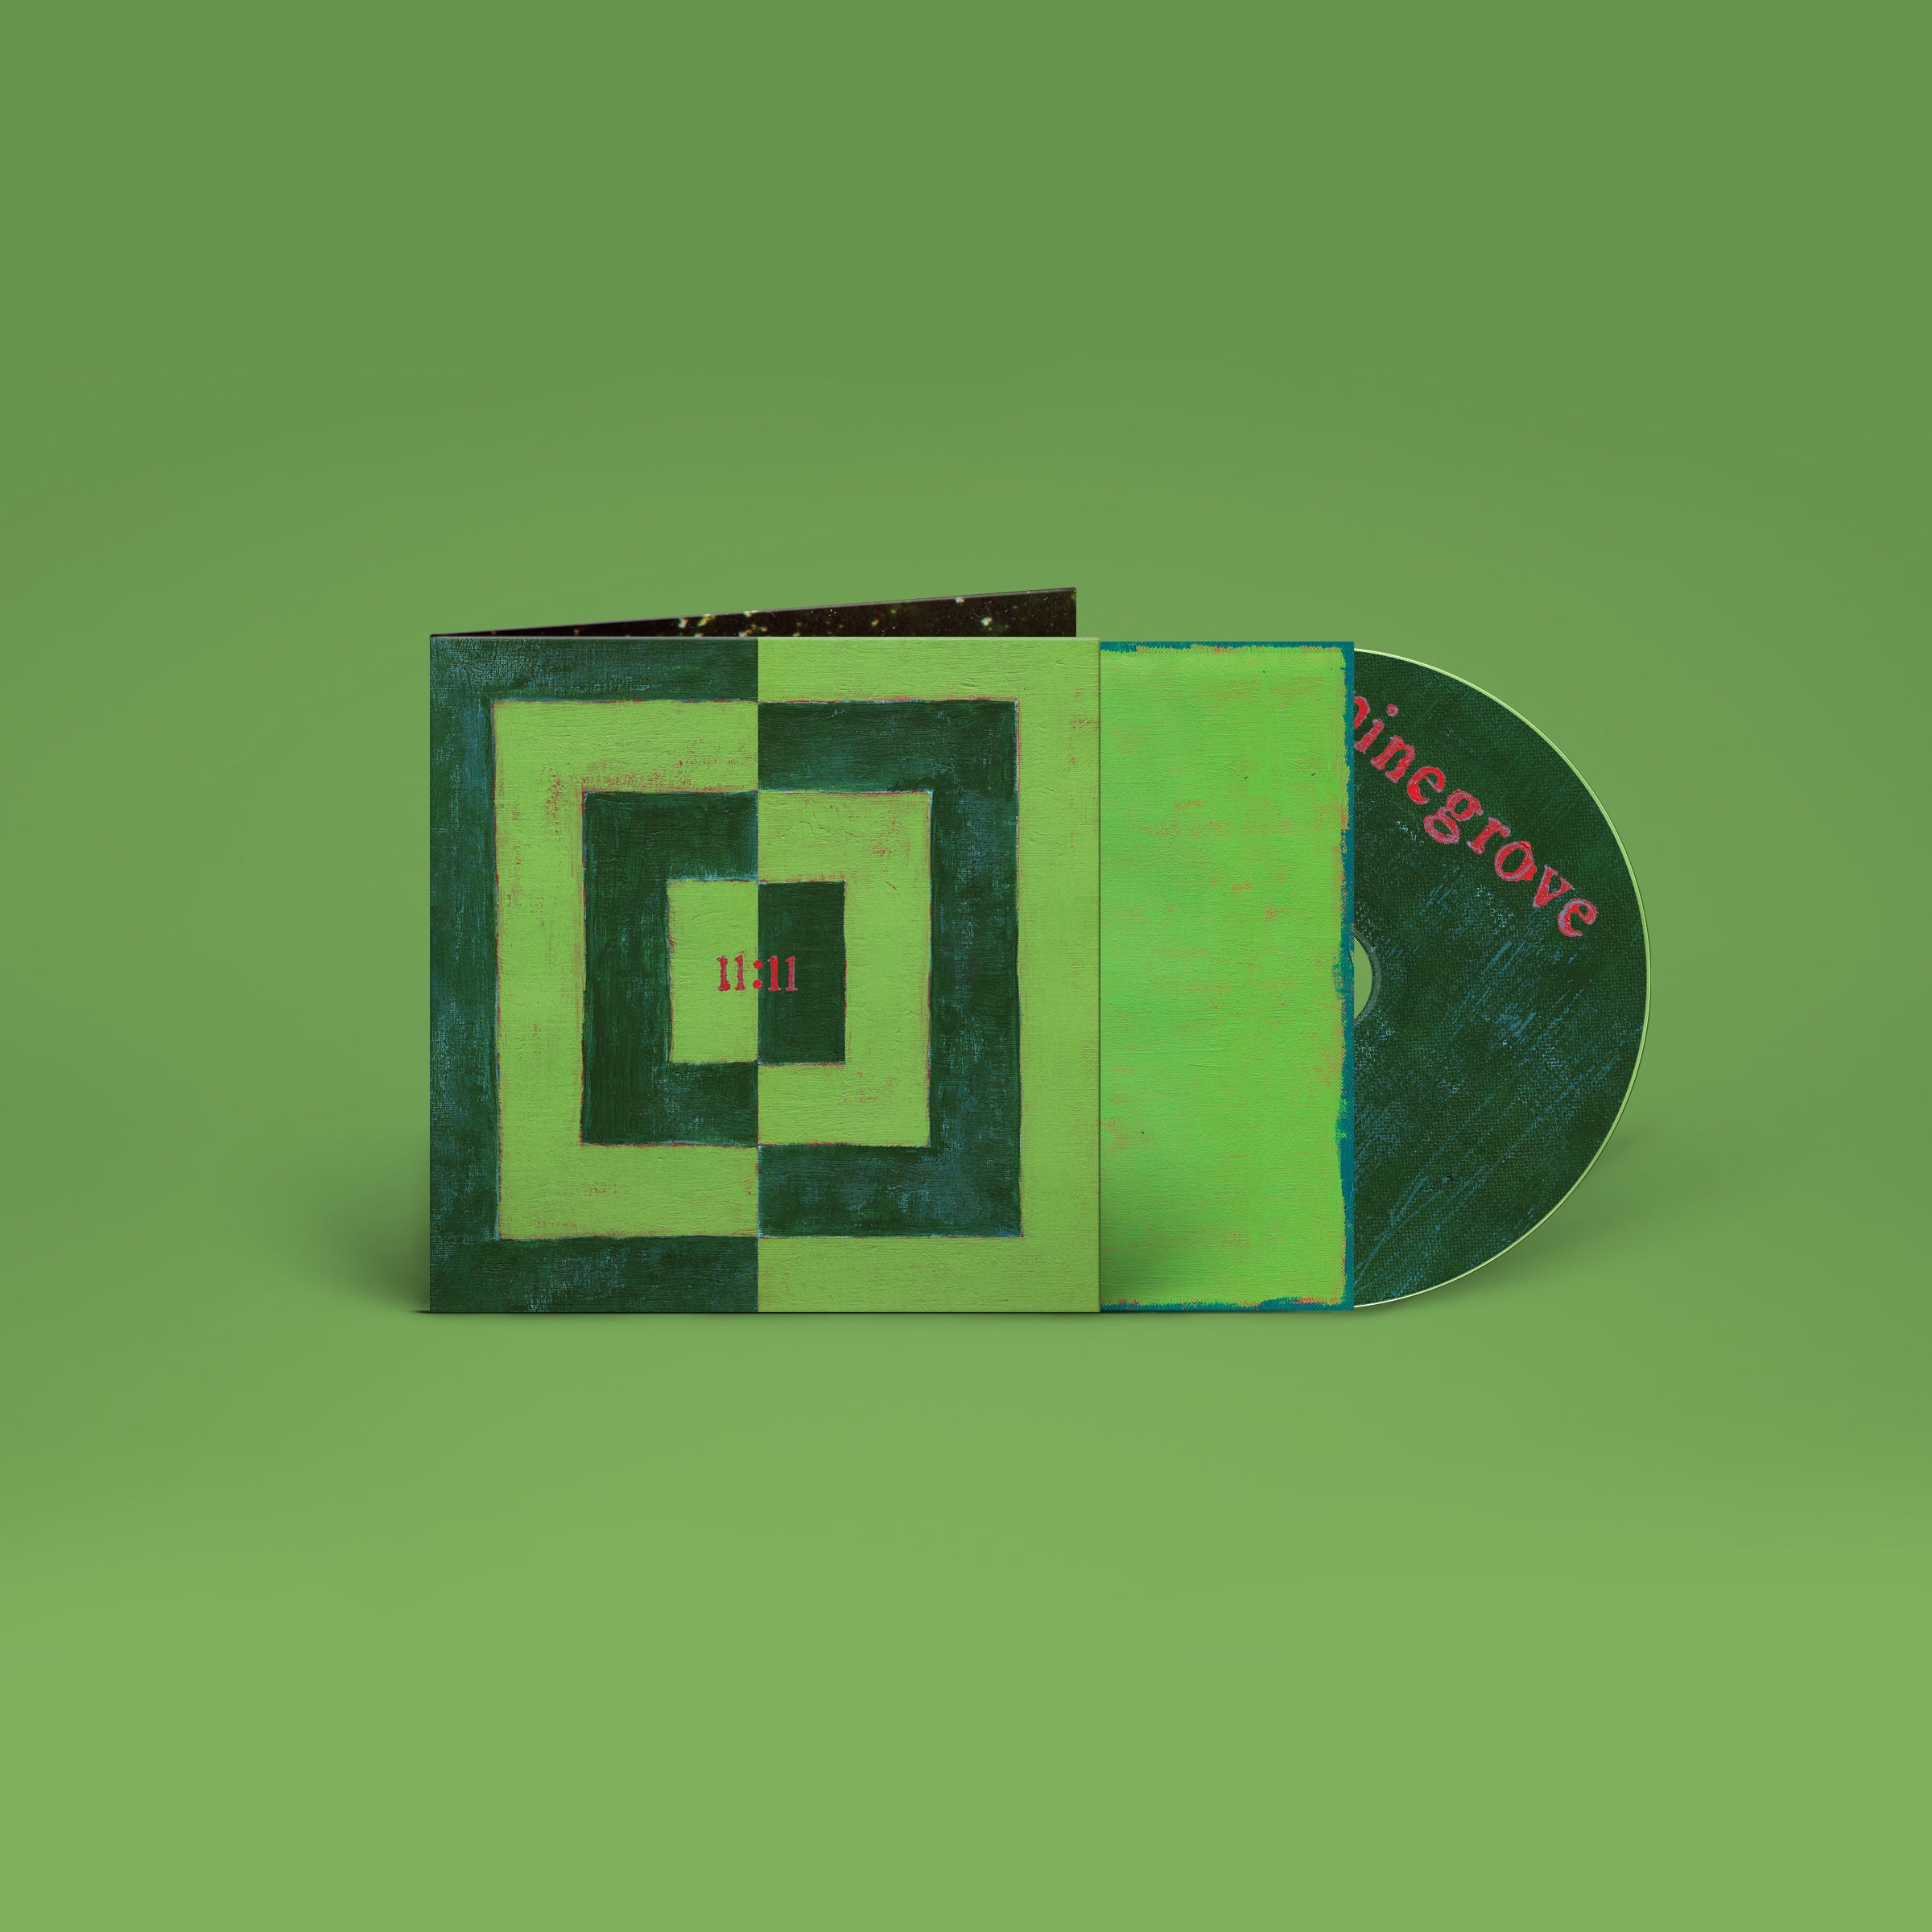 Pinegrove - 11.11: CD